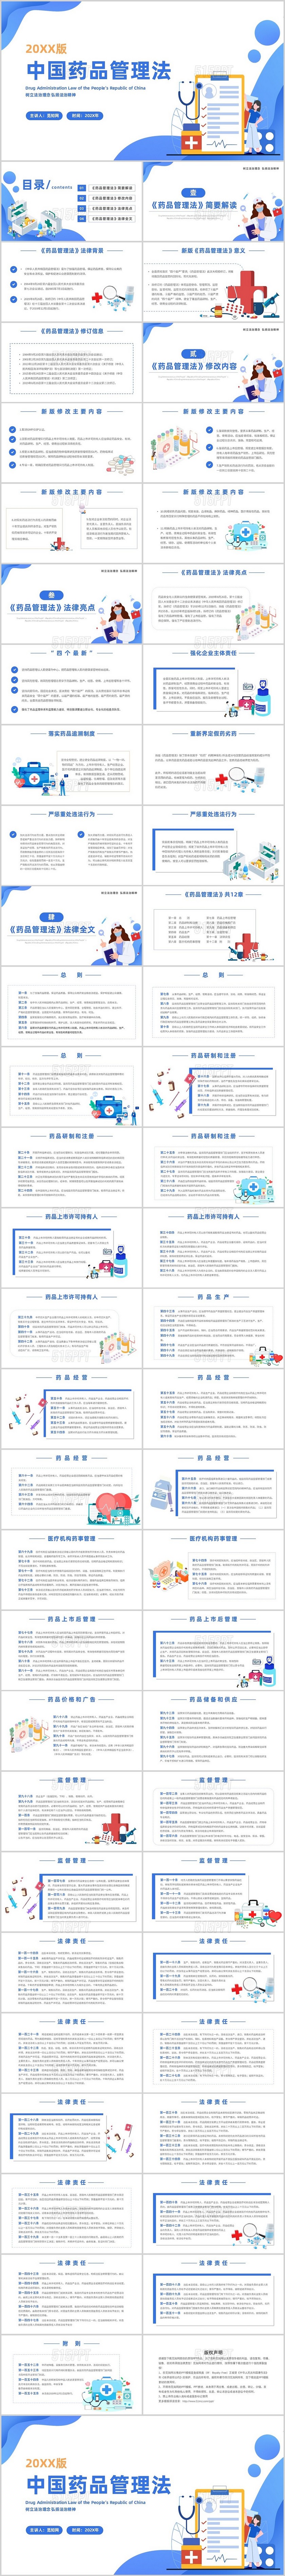 蓝色简约卡通插画中国药品管理法主题PPT模板